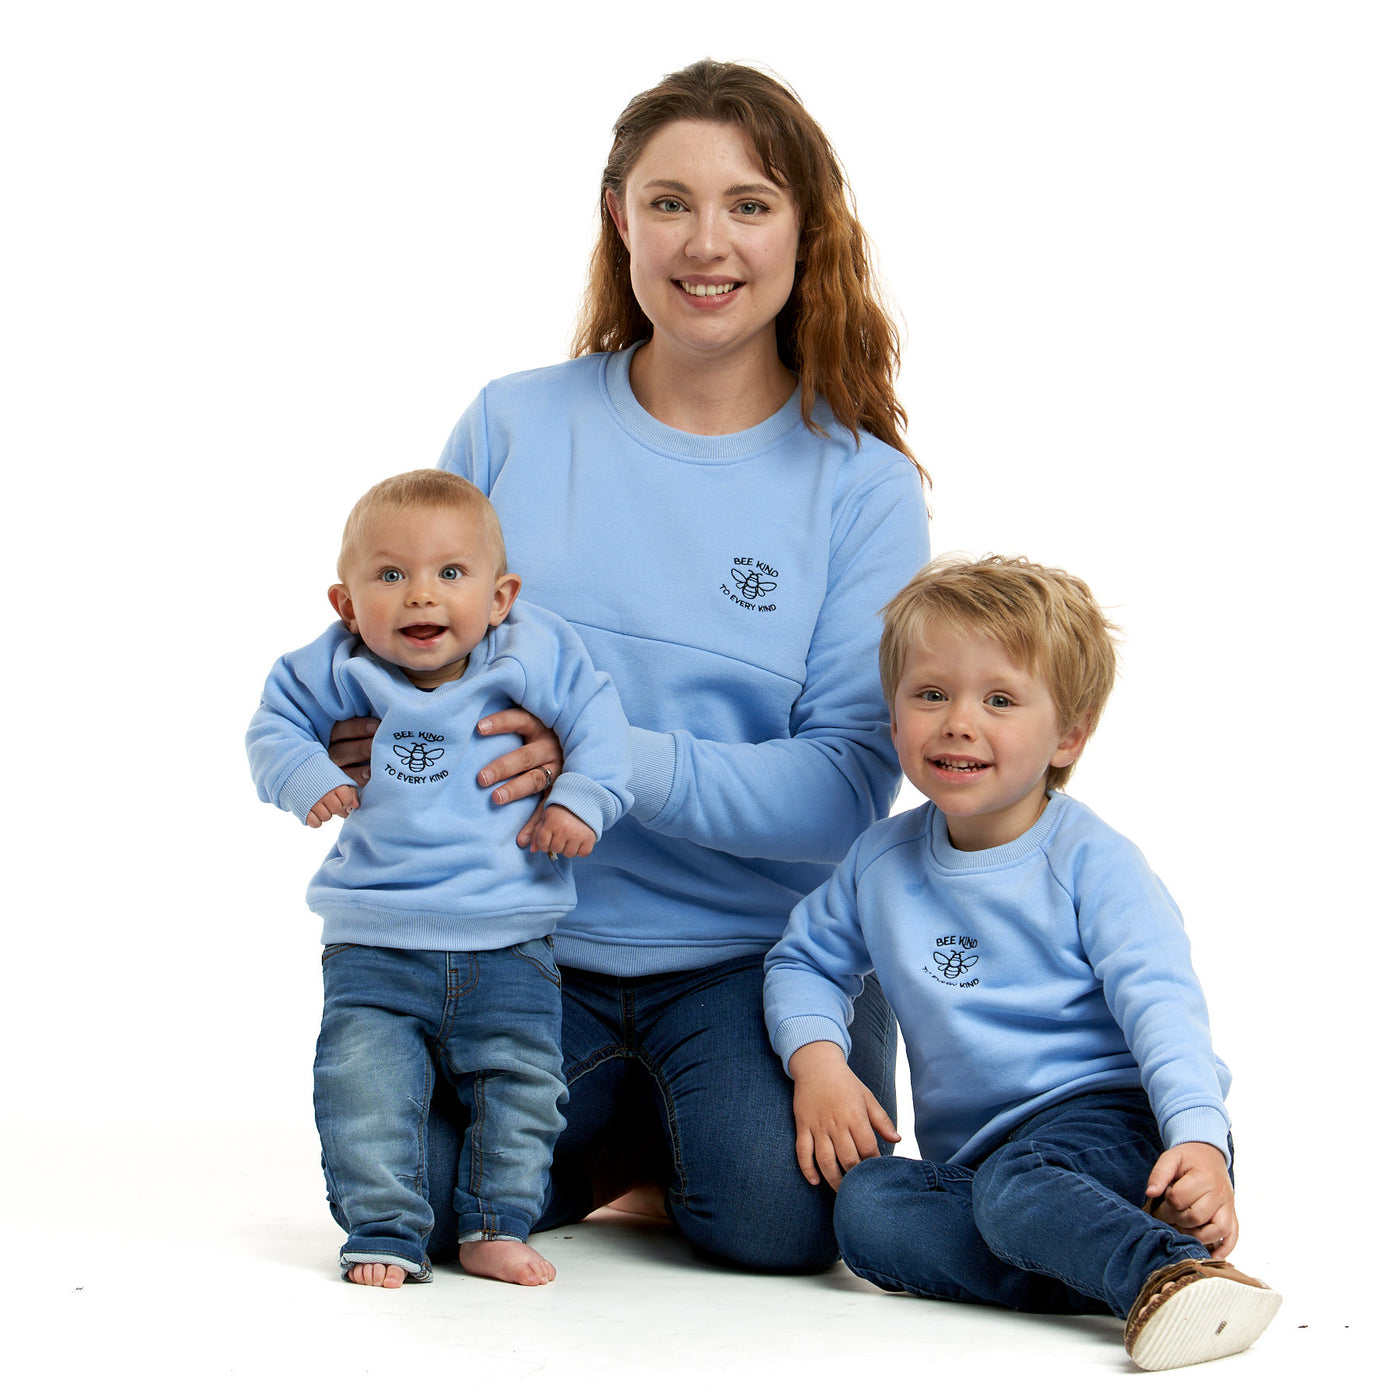 'BEE KIND' Breastfeeding Friendly Mumma Sweatshirt